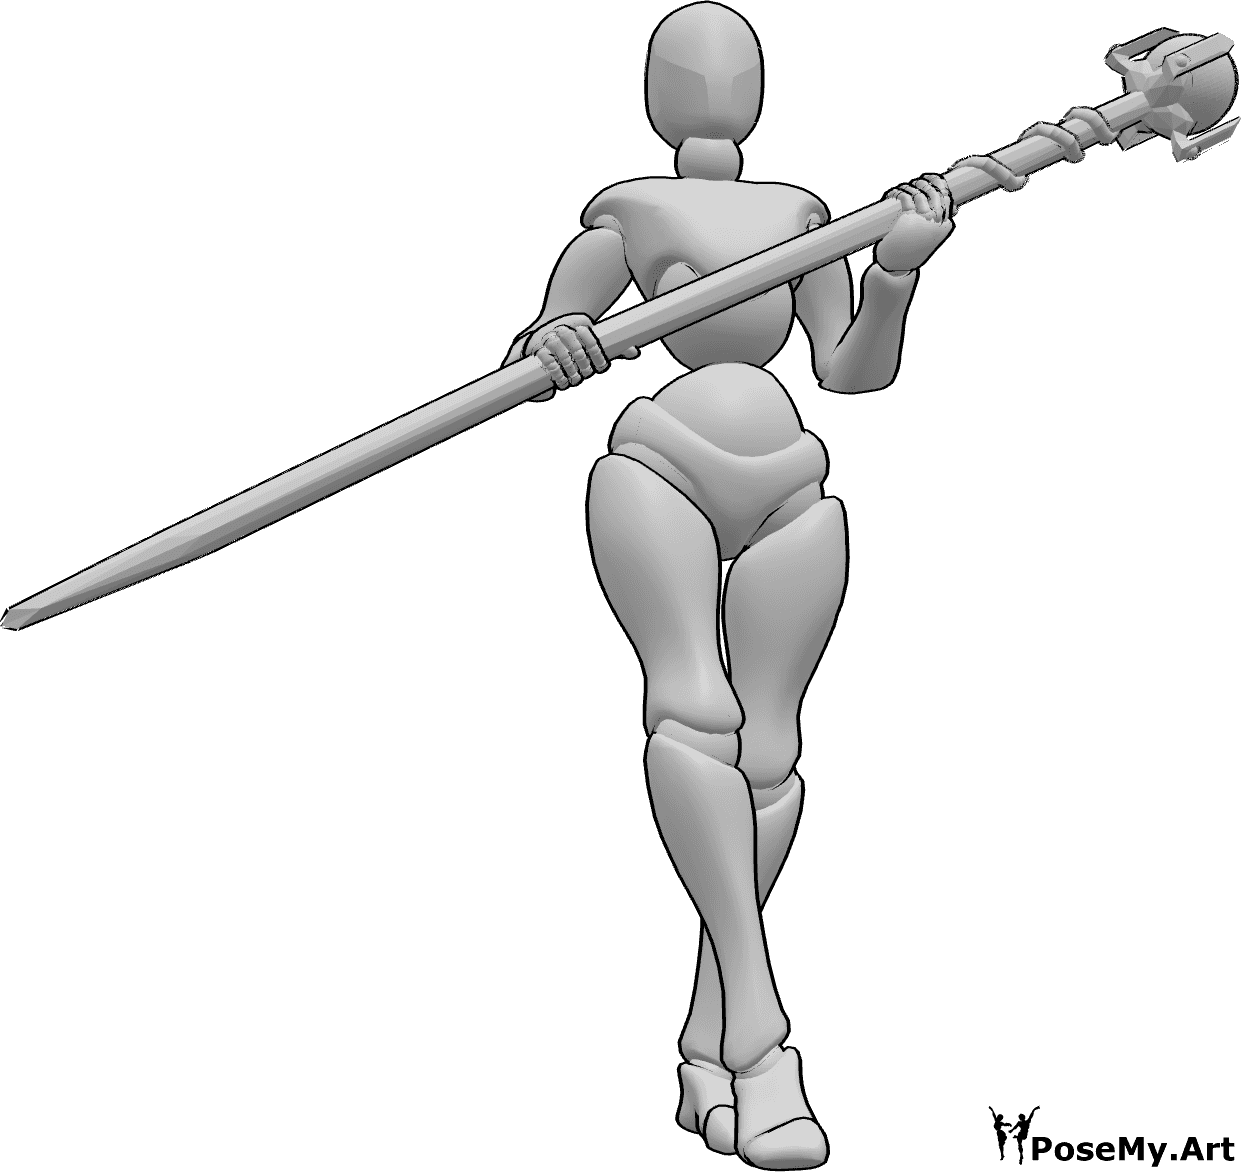 Referência de poses- Pose de caminhada do bastão mágico - Mulher segurando um bastão mágico com as duas mãos e caminhando